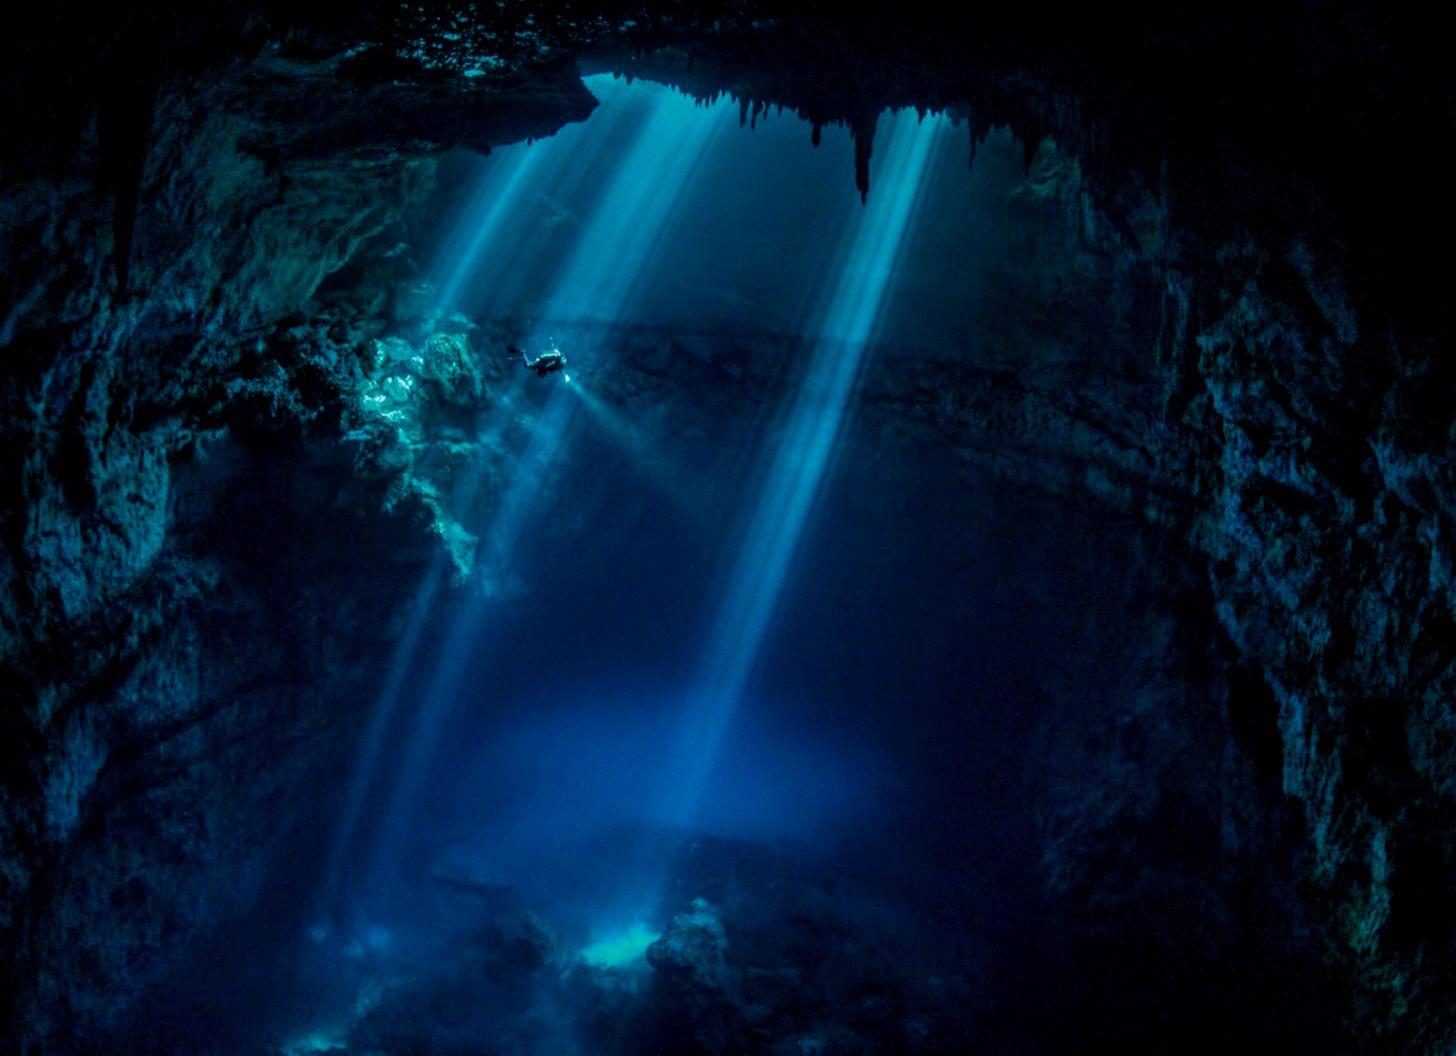 Underwater Cave Wallpaper